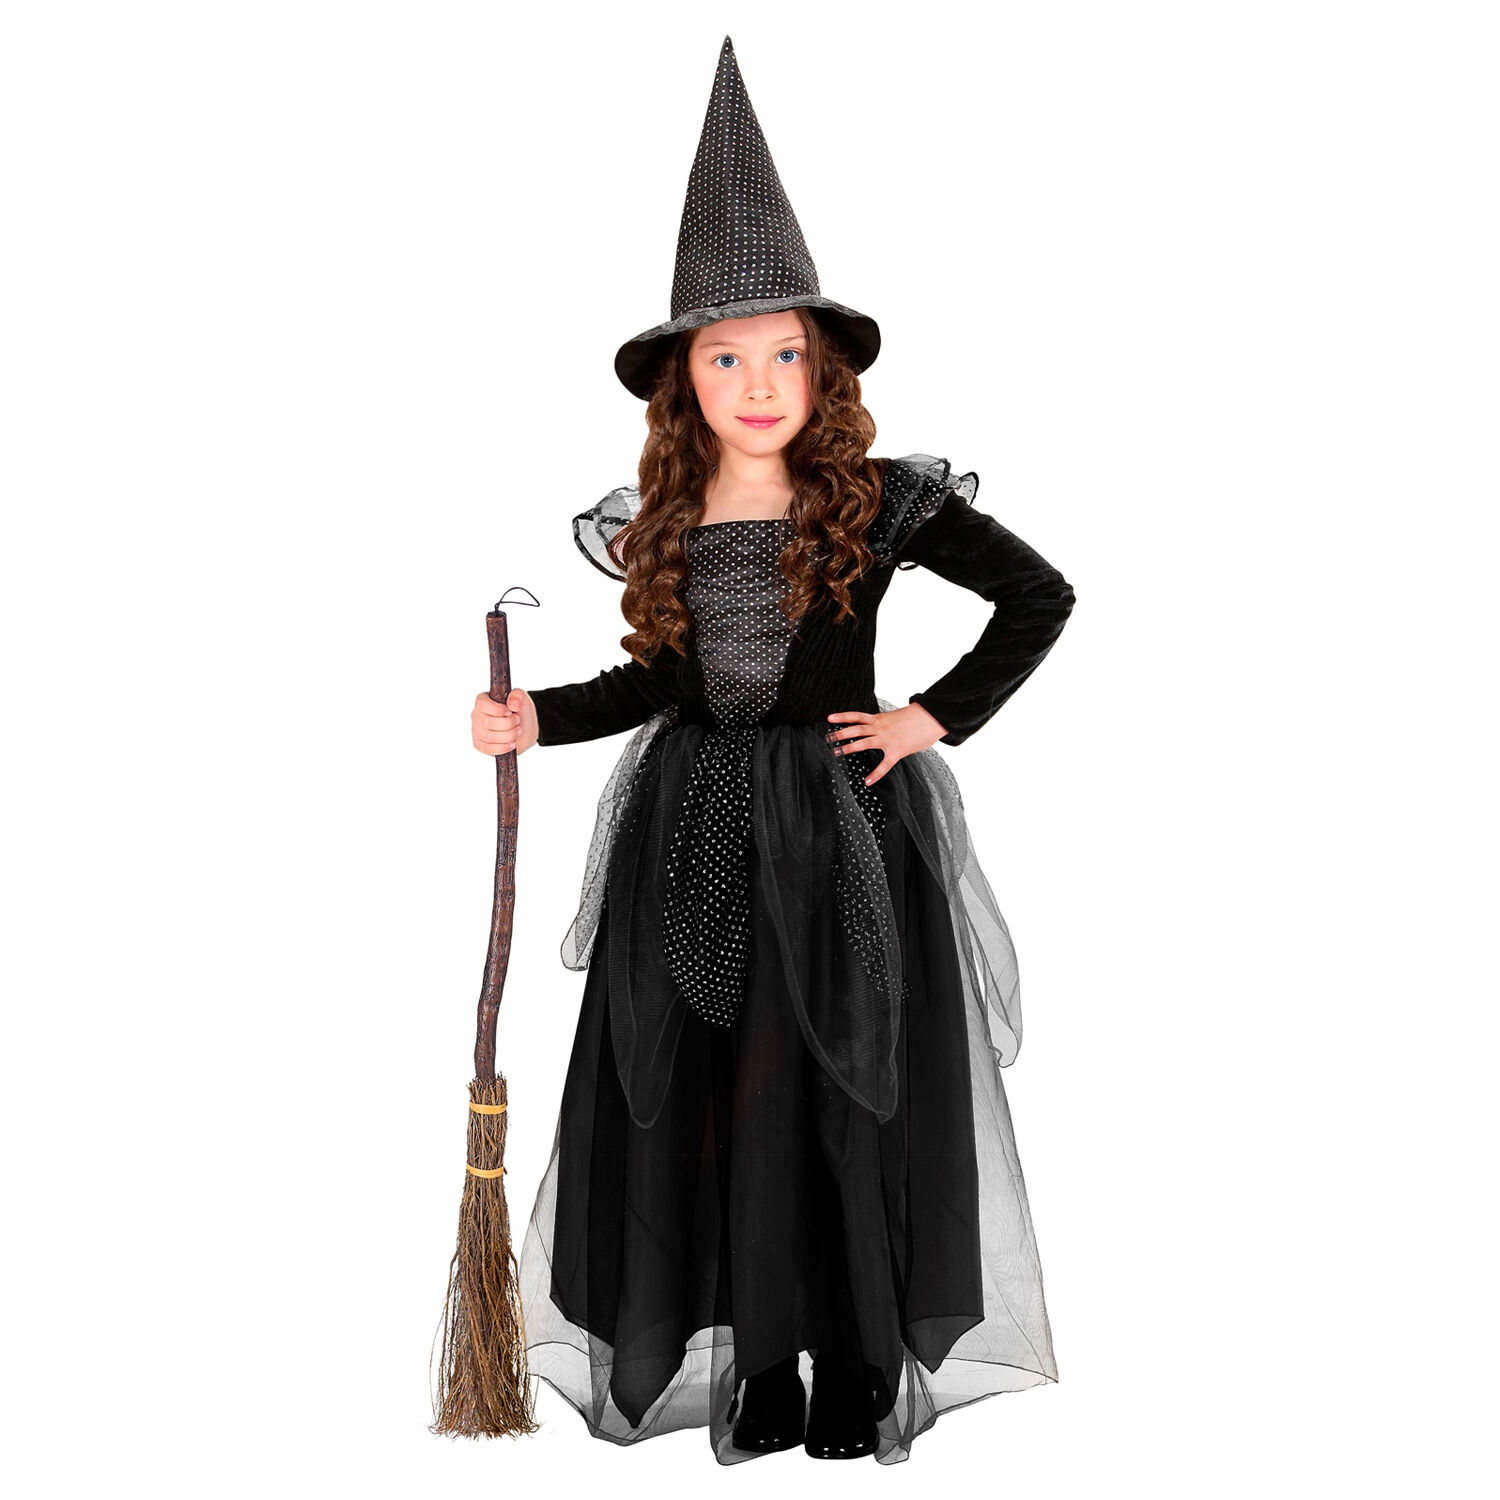 NEU Kinder-Kostüm Hexe, Kleid mit Hexenhut, schwarz, Gr. 98, für Kinder von 1-2 Jahren Bild 3